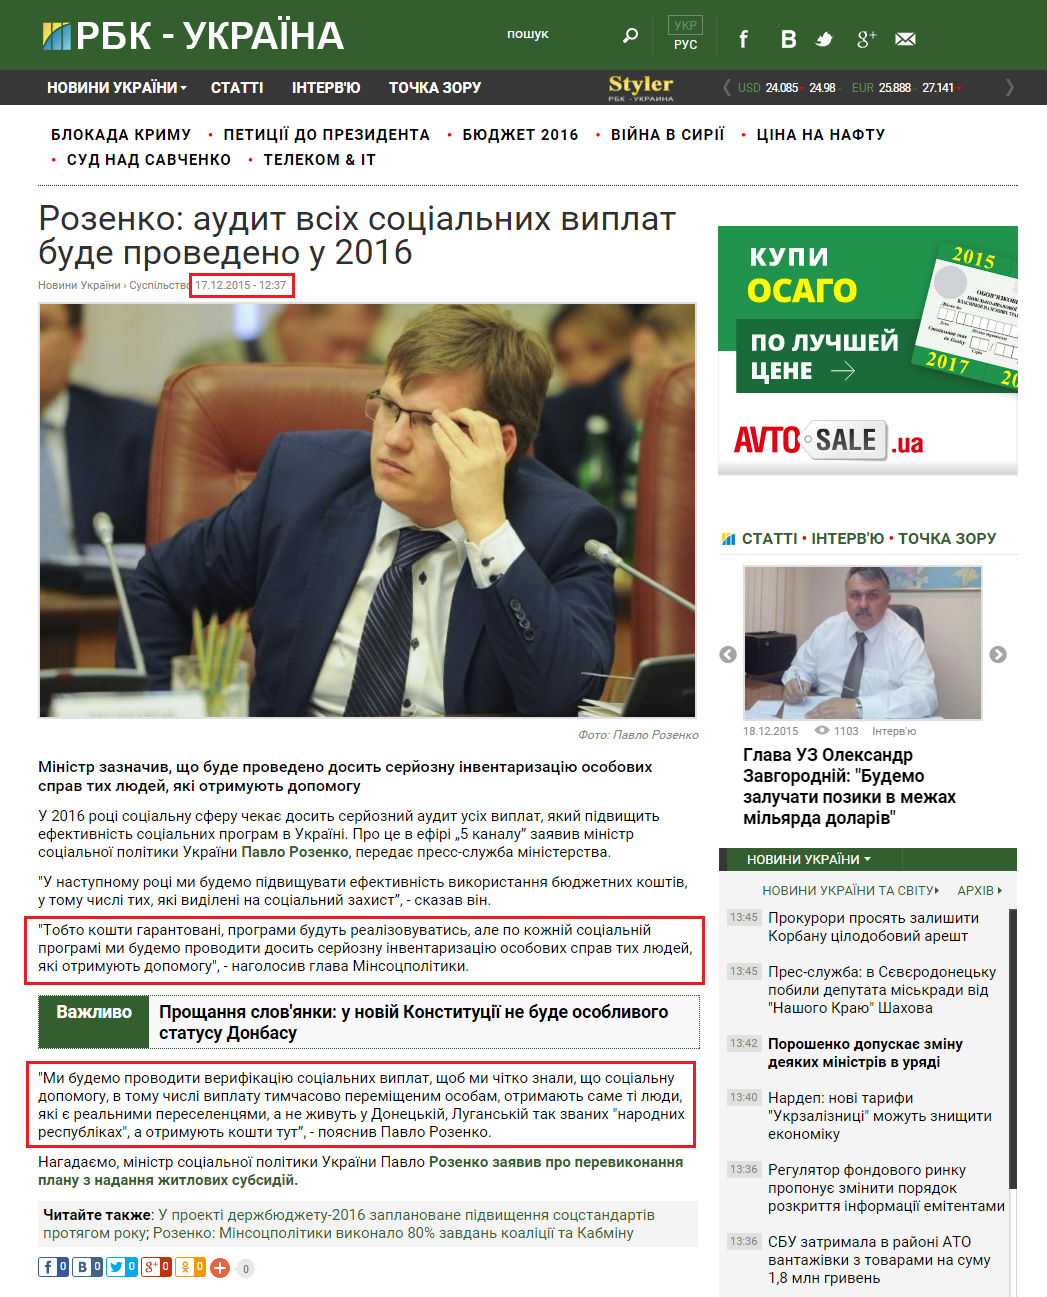 http://www.rbc.ua/ukr/news/rozenko-audit-sotsialnyh-vyplat-budet-proveden-1450348486.html